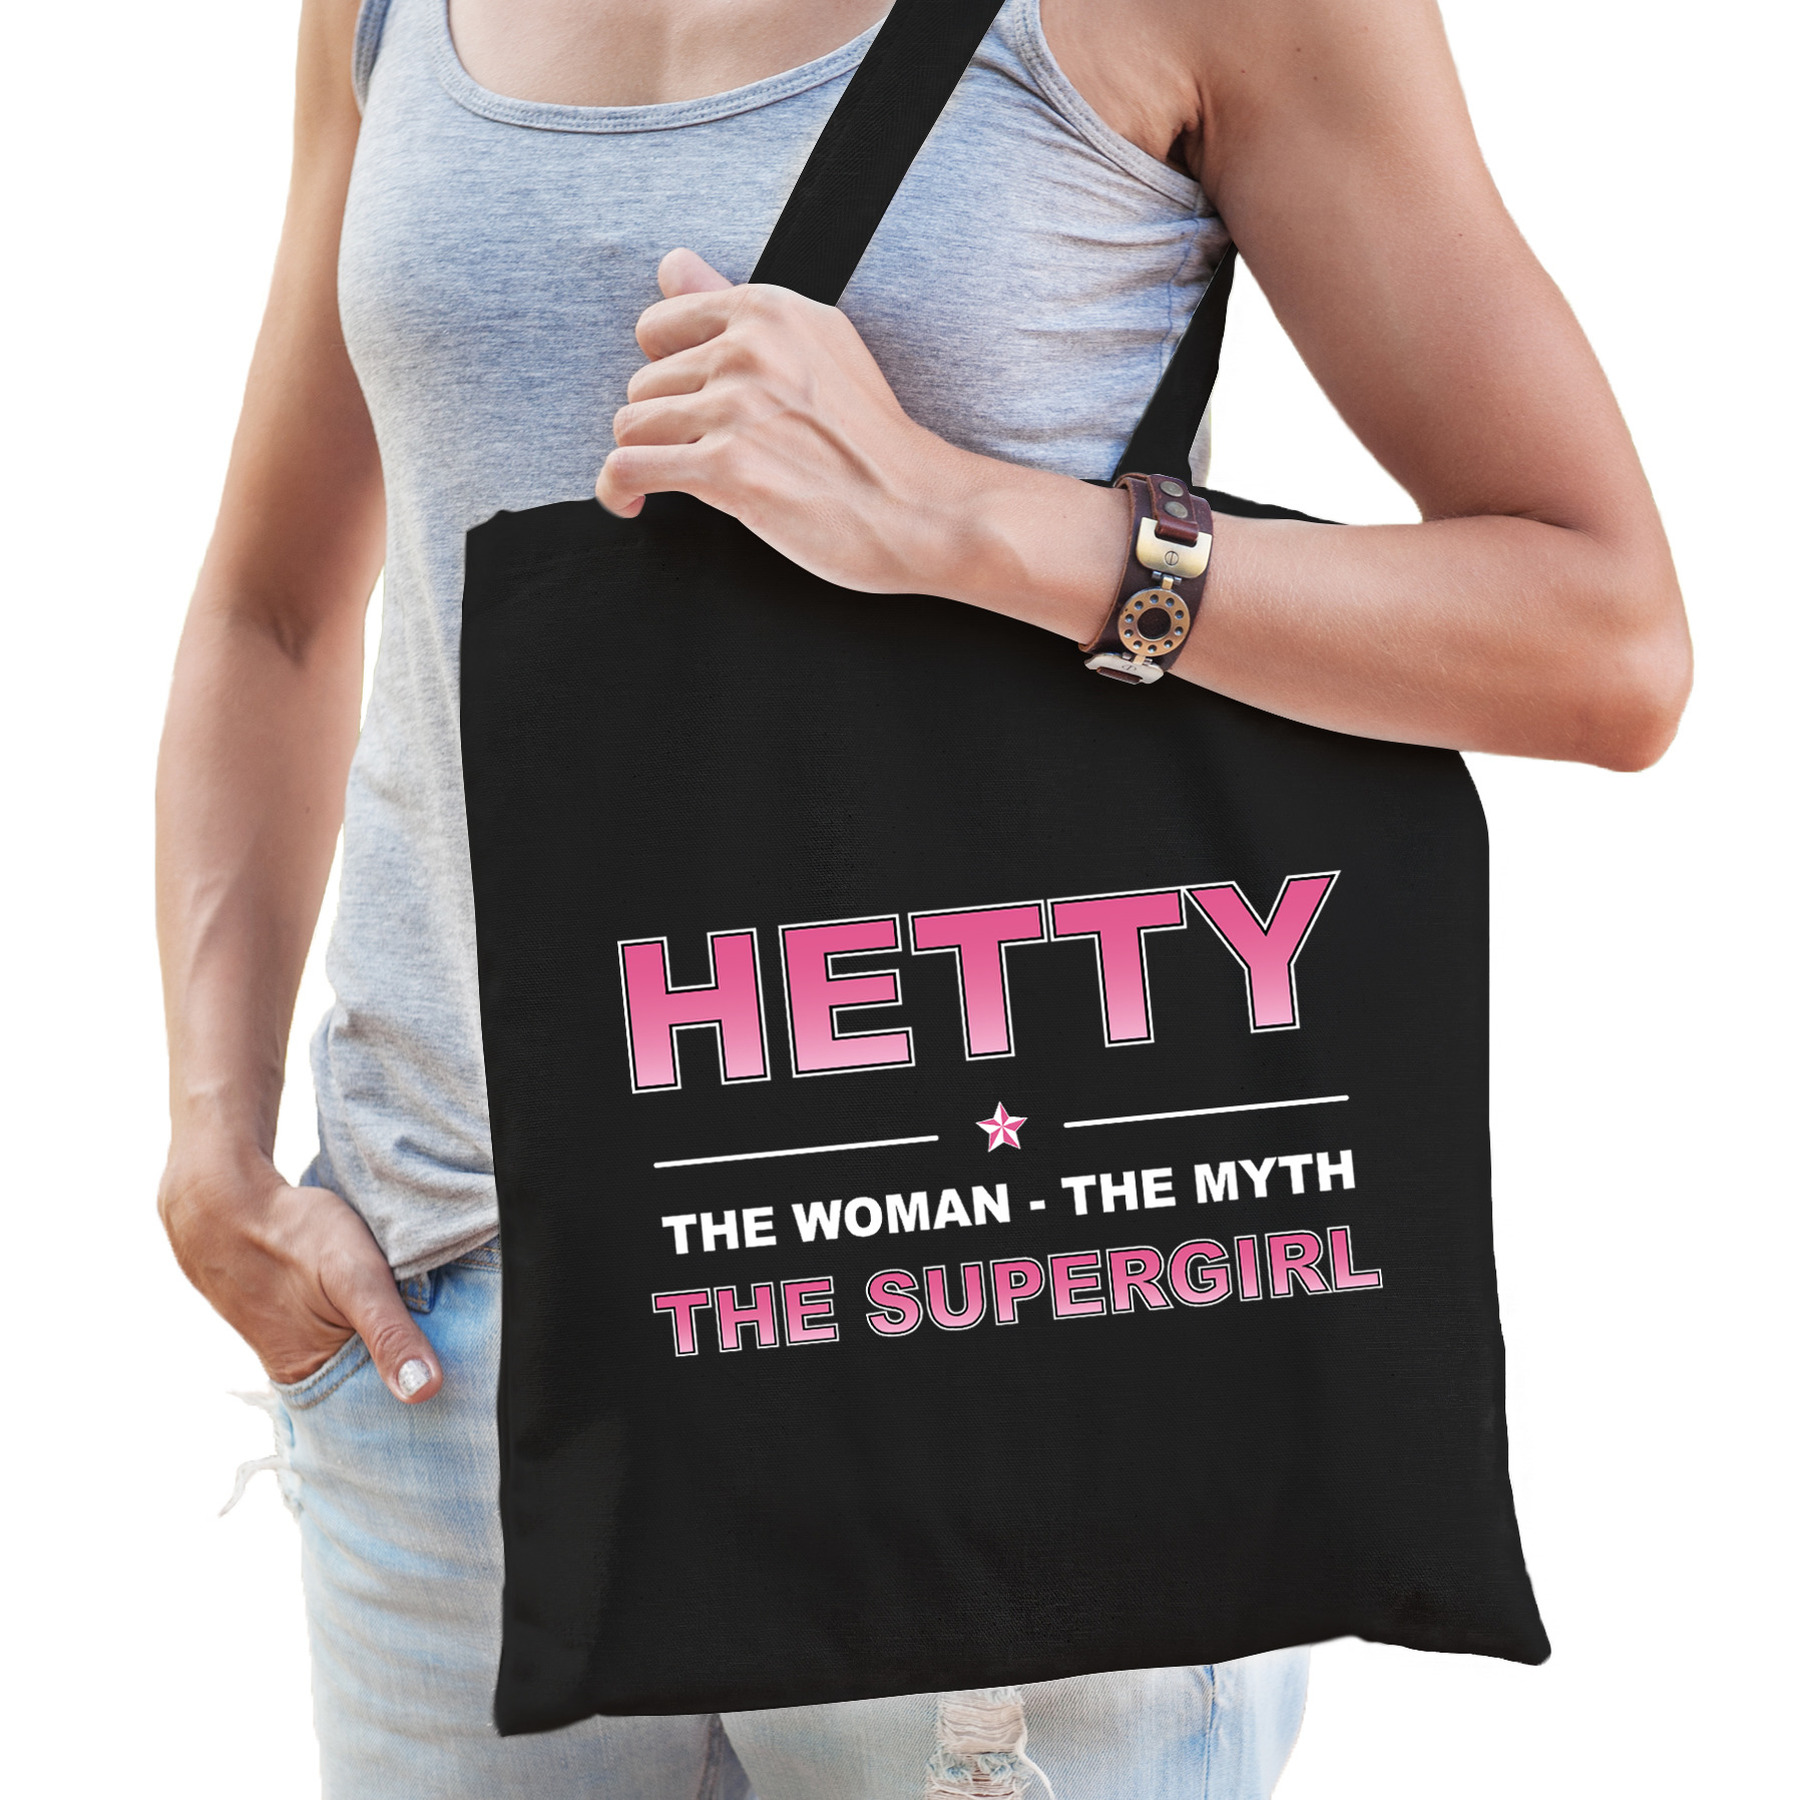 Naam Hetty The women, The myth the supergirl tasje zwart Cadeau boodschappentasje